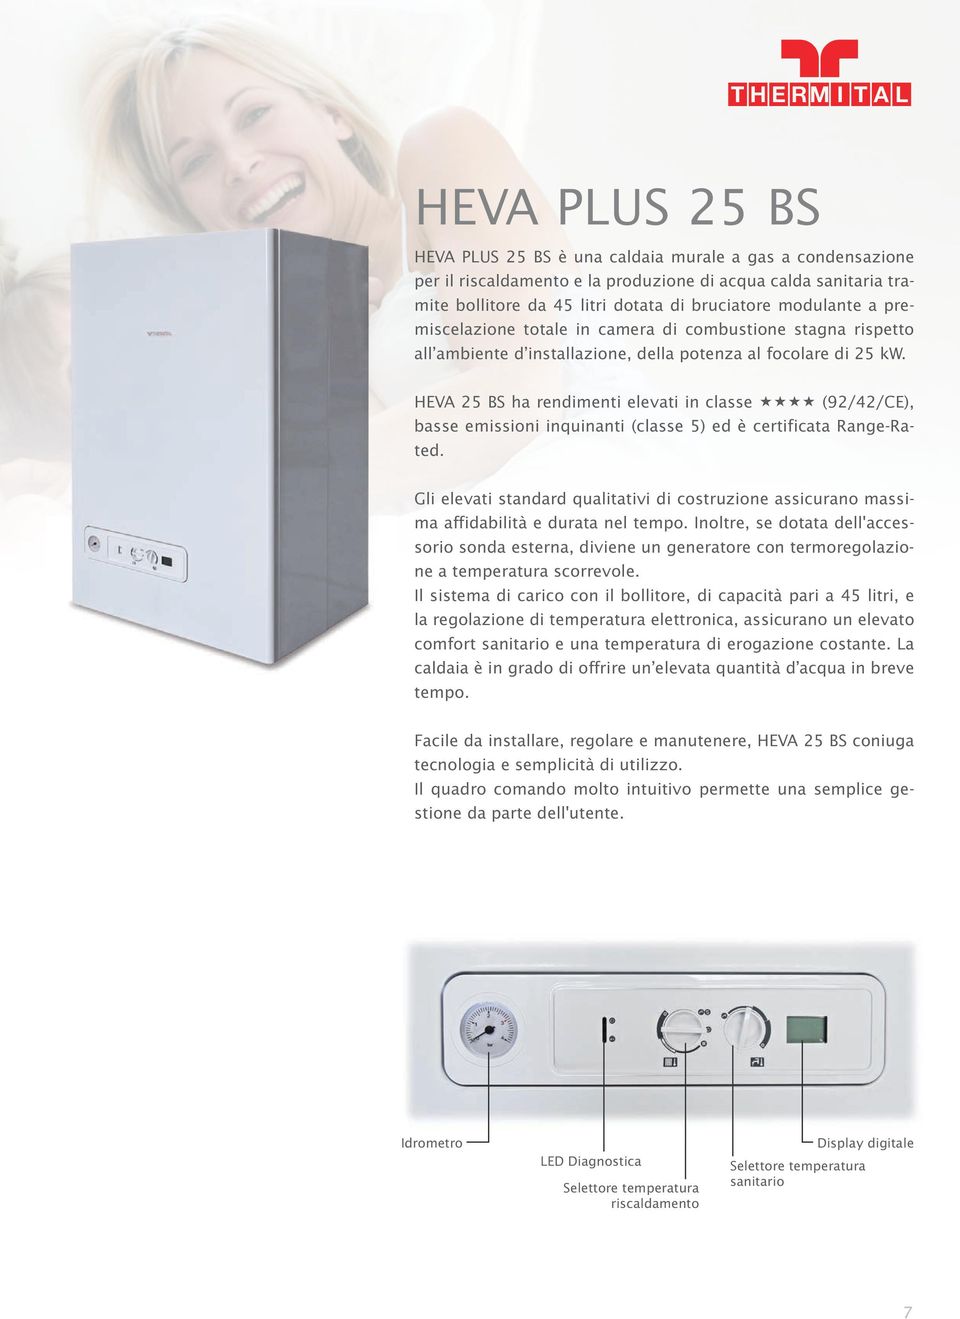 HEVA 25 BS ha rendimenti elevati in classe (92/42/CE), basse emissioni inquinanti (classe 5) ed è certificata Range-Rated.